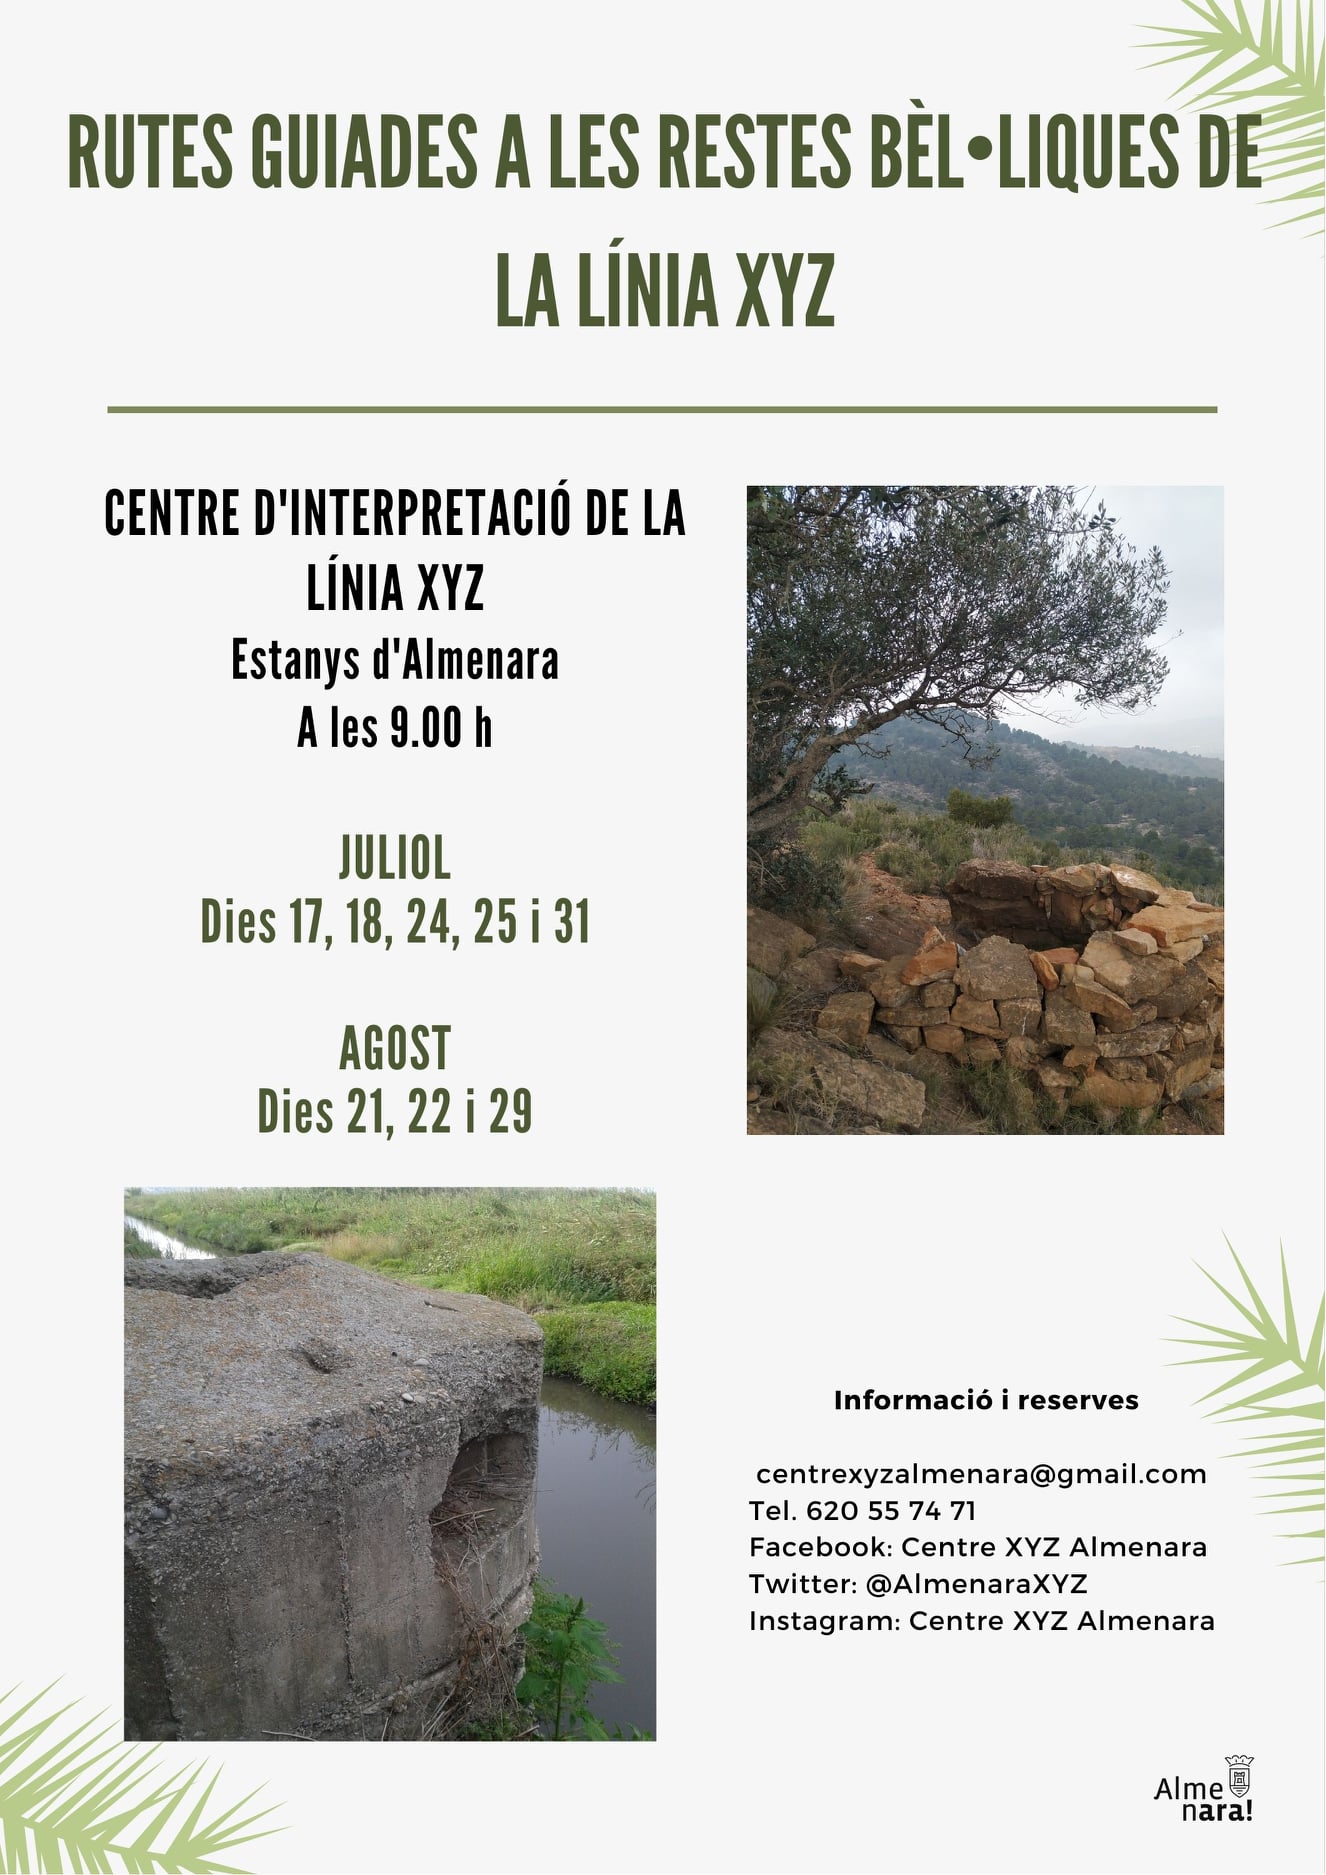 El Centre d’Interpretació de la Línia XYZ de Almenara programa el calendario de rutas de julio y agosto